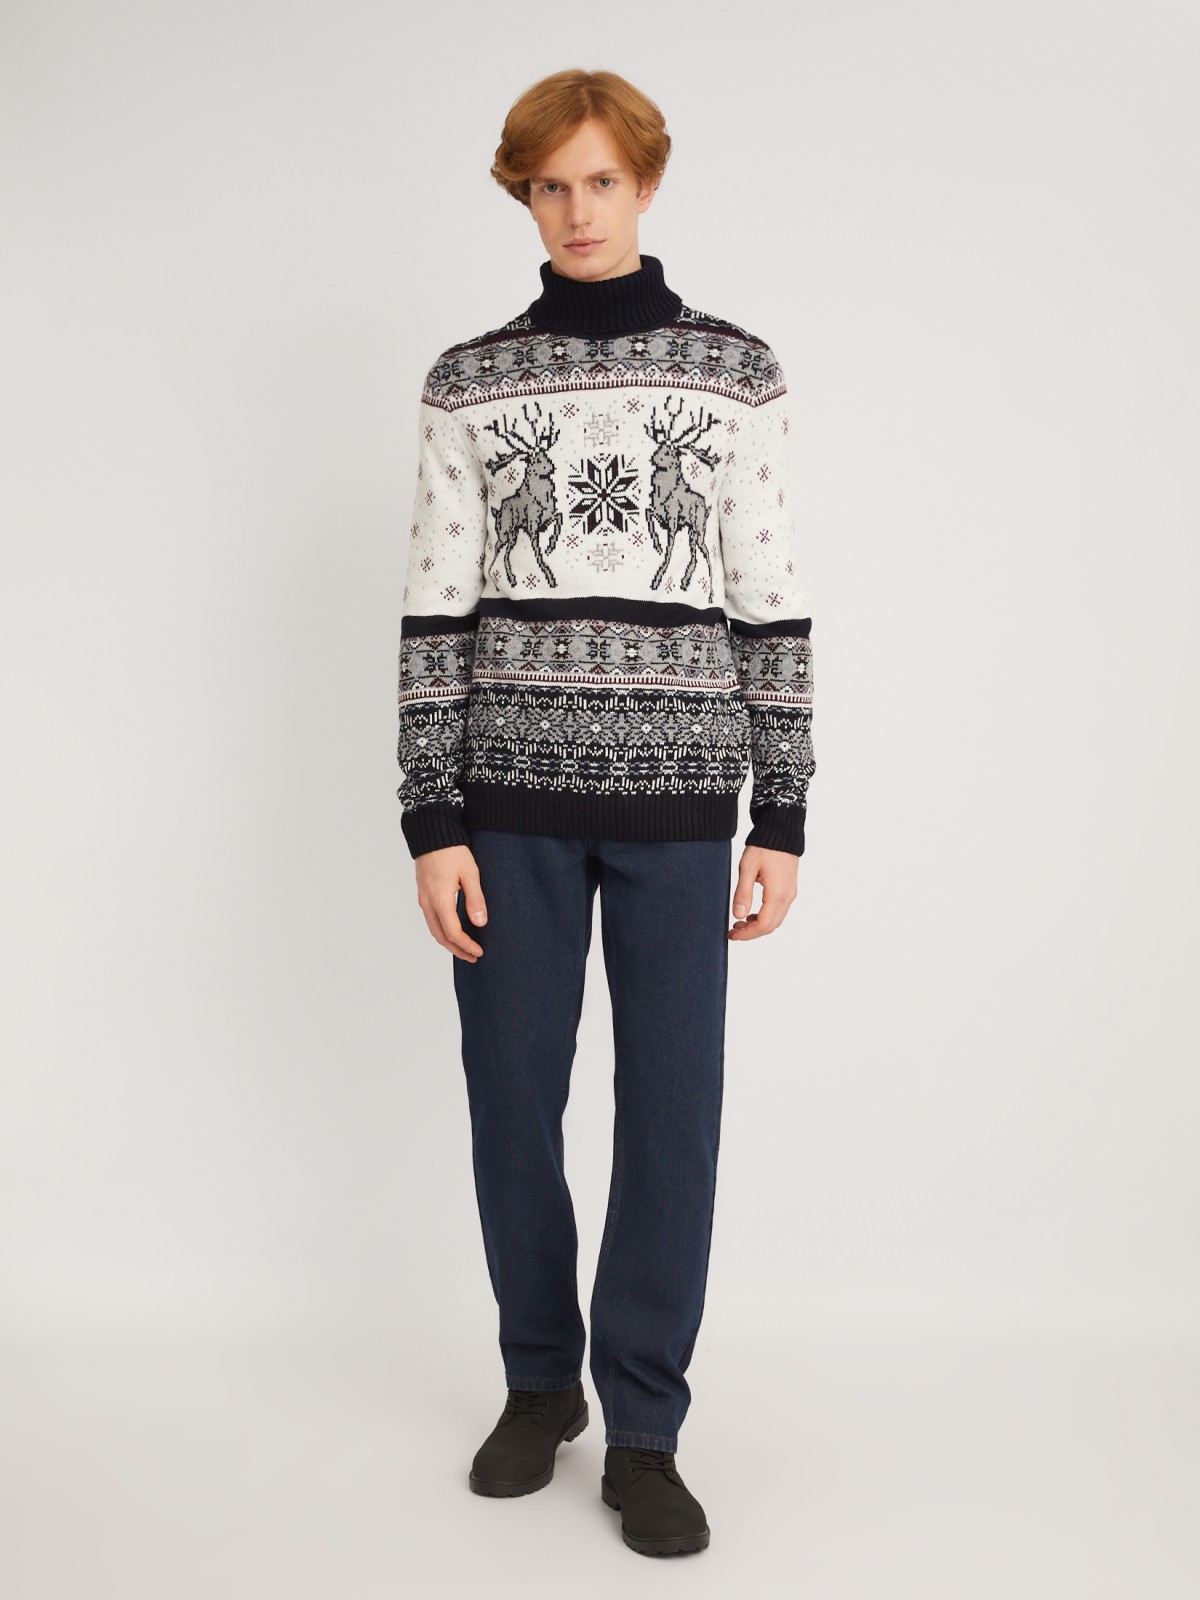 Вязаный свитер из акрила со скандинавским узором с оленями zolla 013446101083, цвет синий, размер M - фото 2